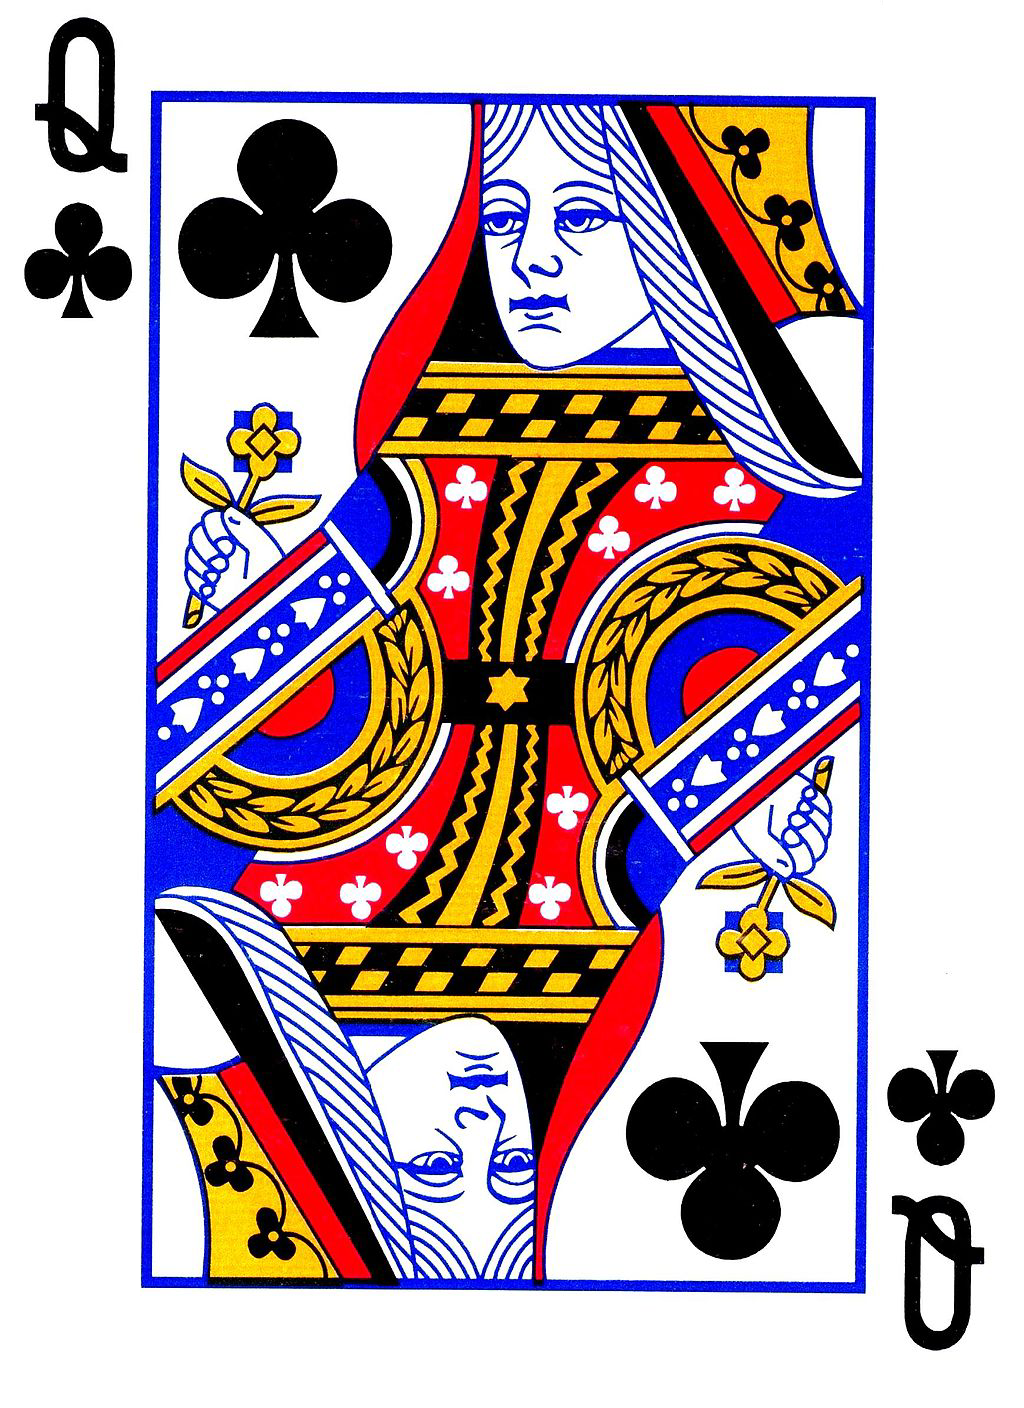 Дама треф 1. Пиковая дама карта Игральная. Король черви дама бубей Королева червей. Дама Треф карта. Игральные карты дама Треф.